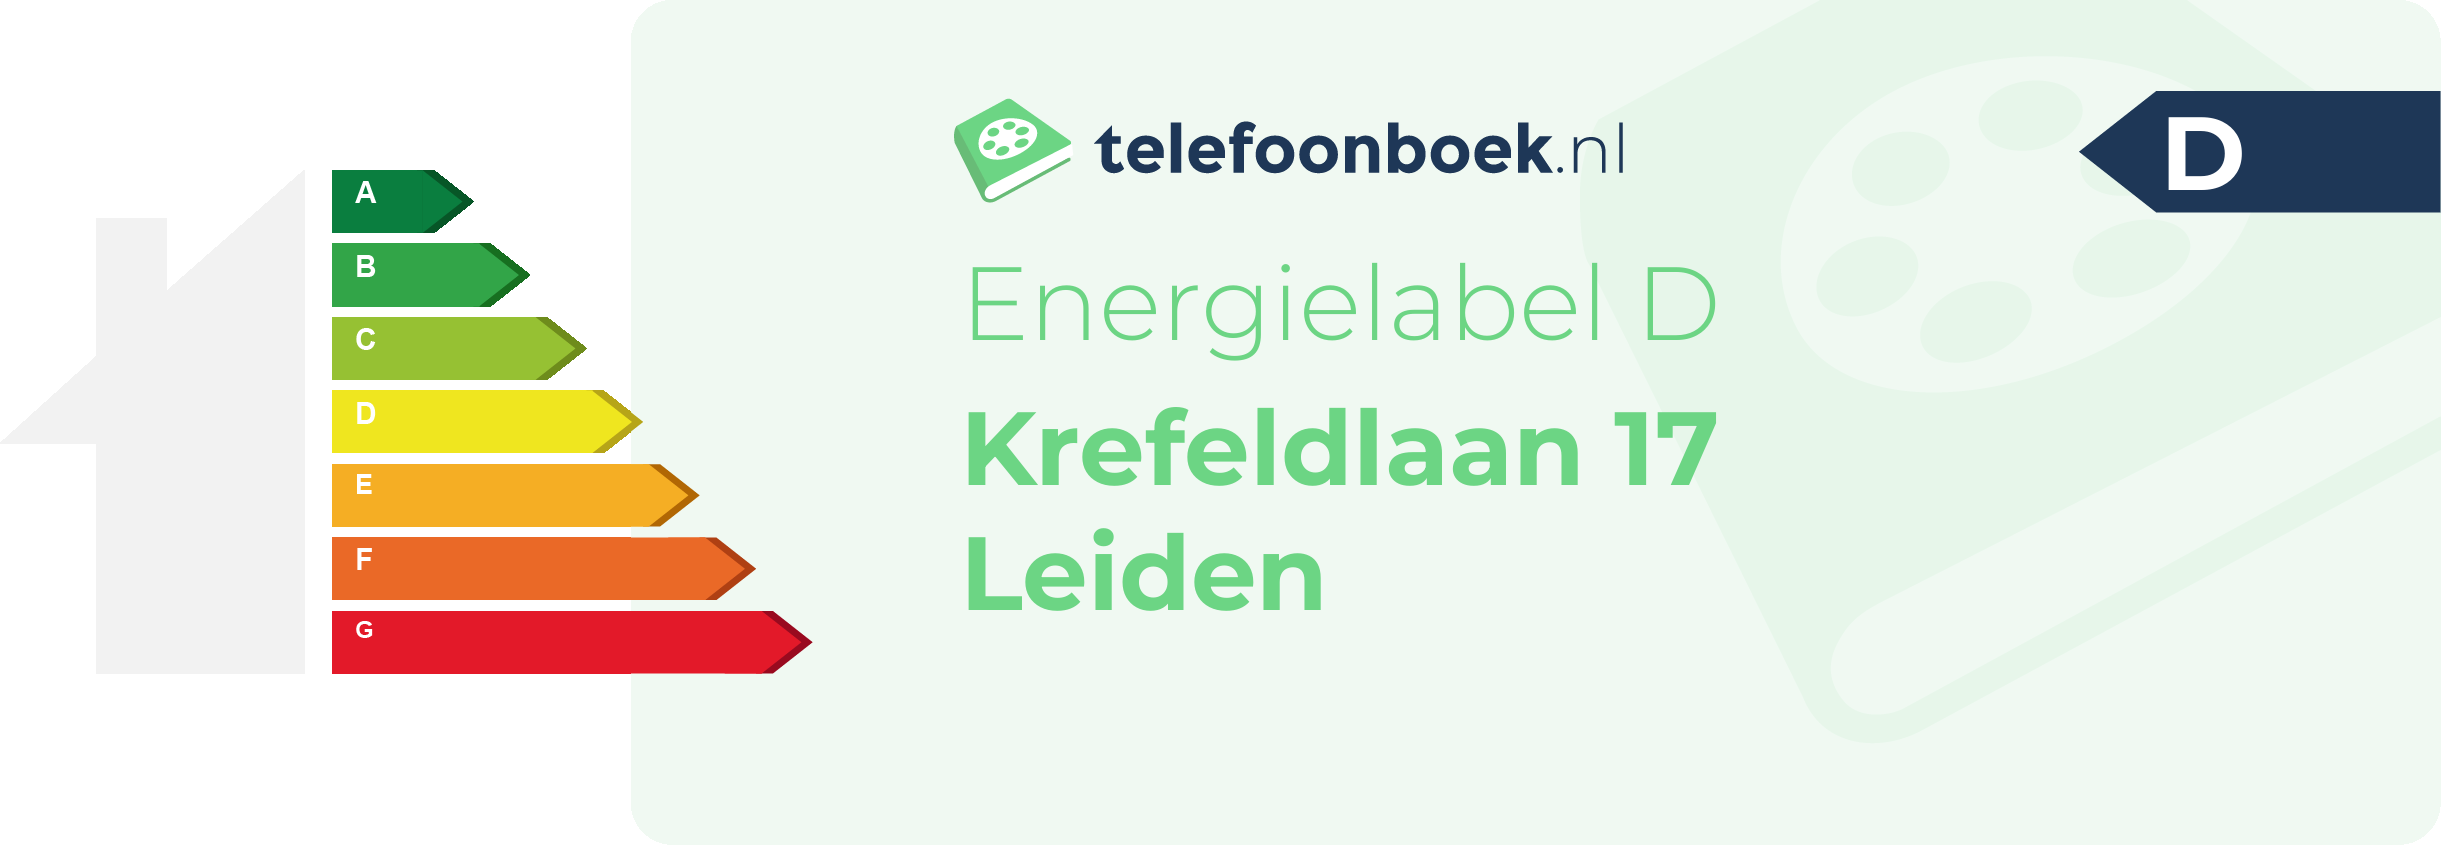 Energielabel Krefeldlaan 17 Leiden